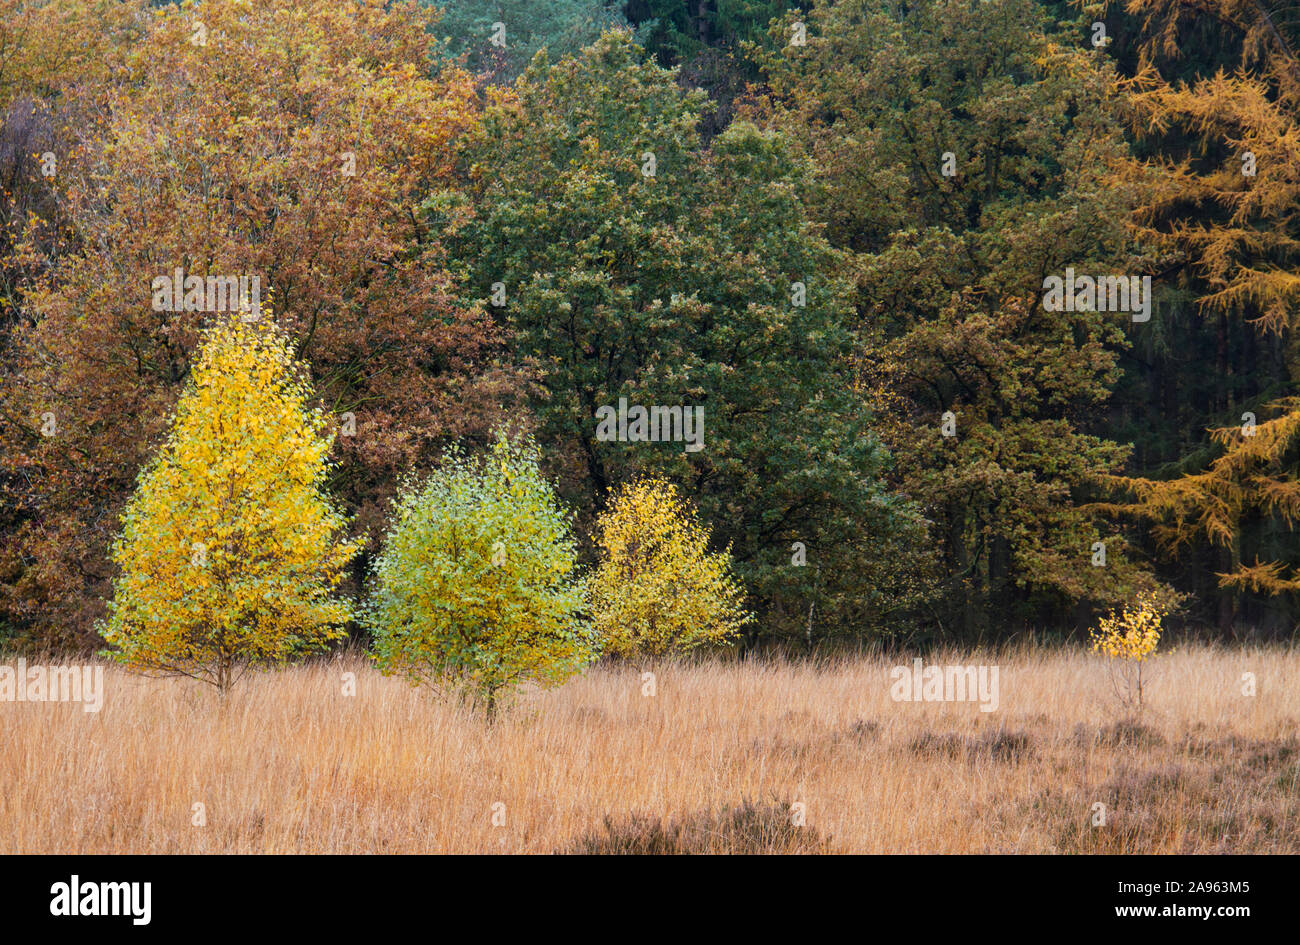 Junge Birken im Herbst Farben ein Heide, mit Lila moor Gras gewachsen, im Hintergrund ein Wald Stockfoto